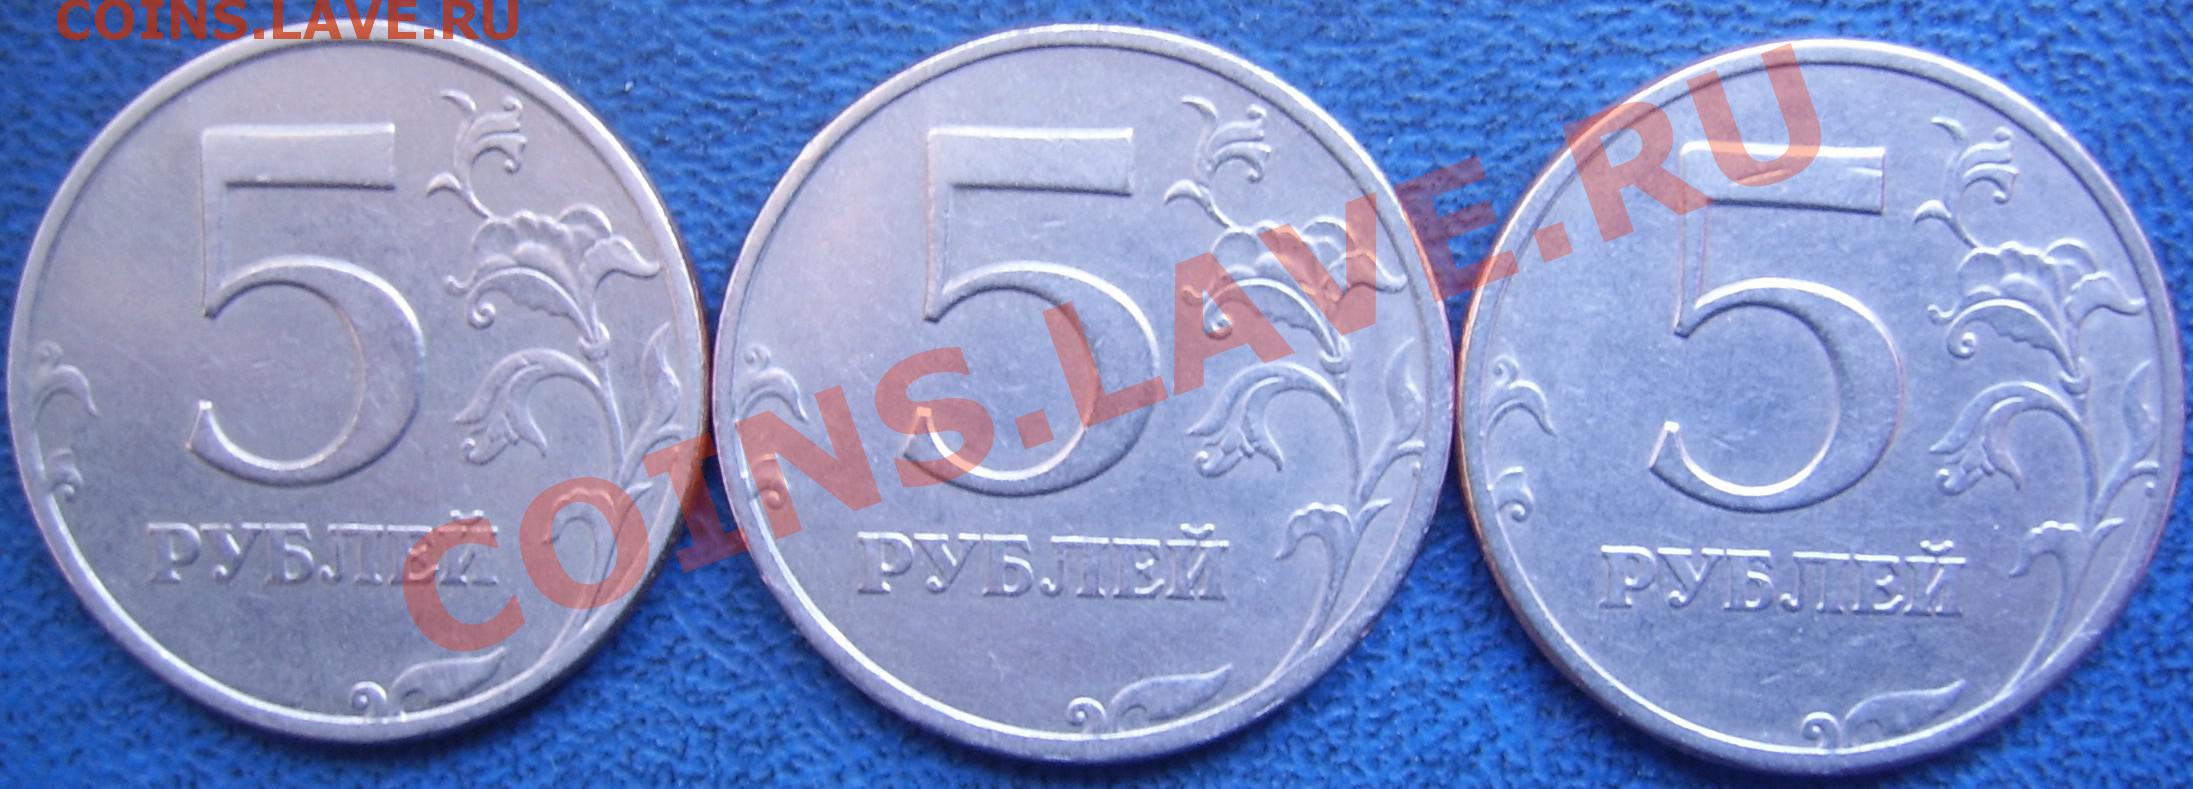 Рубль 5 35. 5 Рублей 1997 СПМД. Беларусь 1 рубль, 1997. Синие пять рублей. 5 Рублей 1997 г. СПМД - шт. 2.23 Увеличенное изображение реверса.